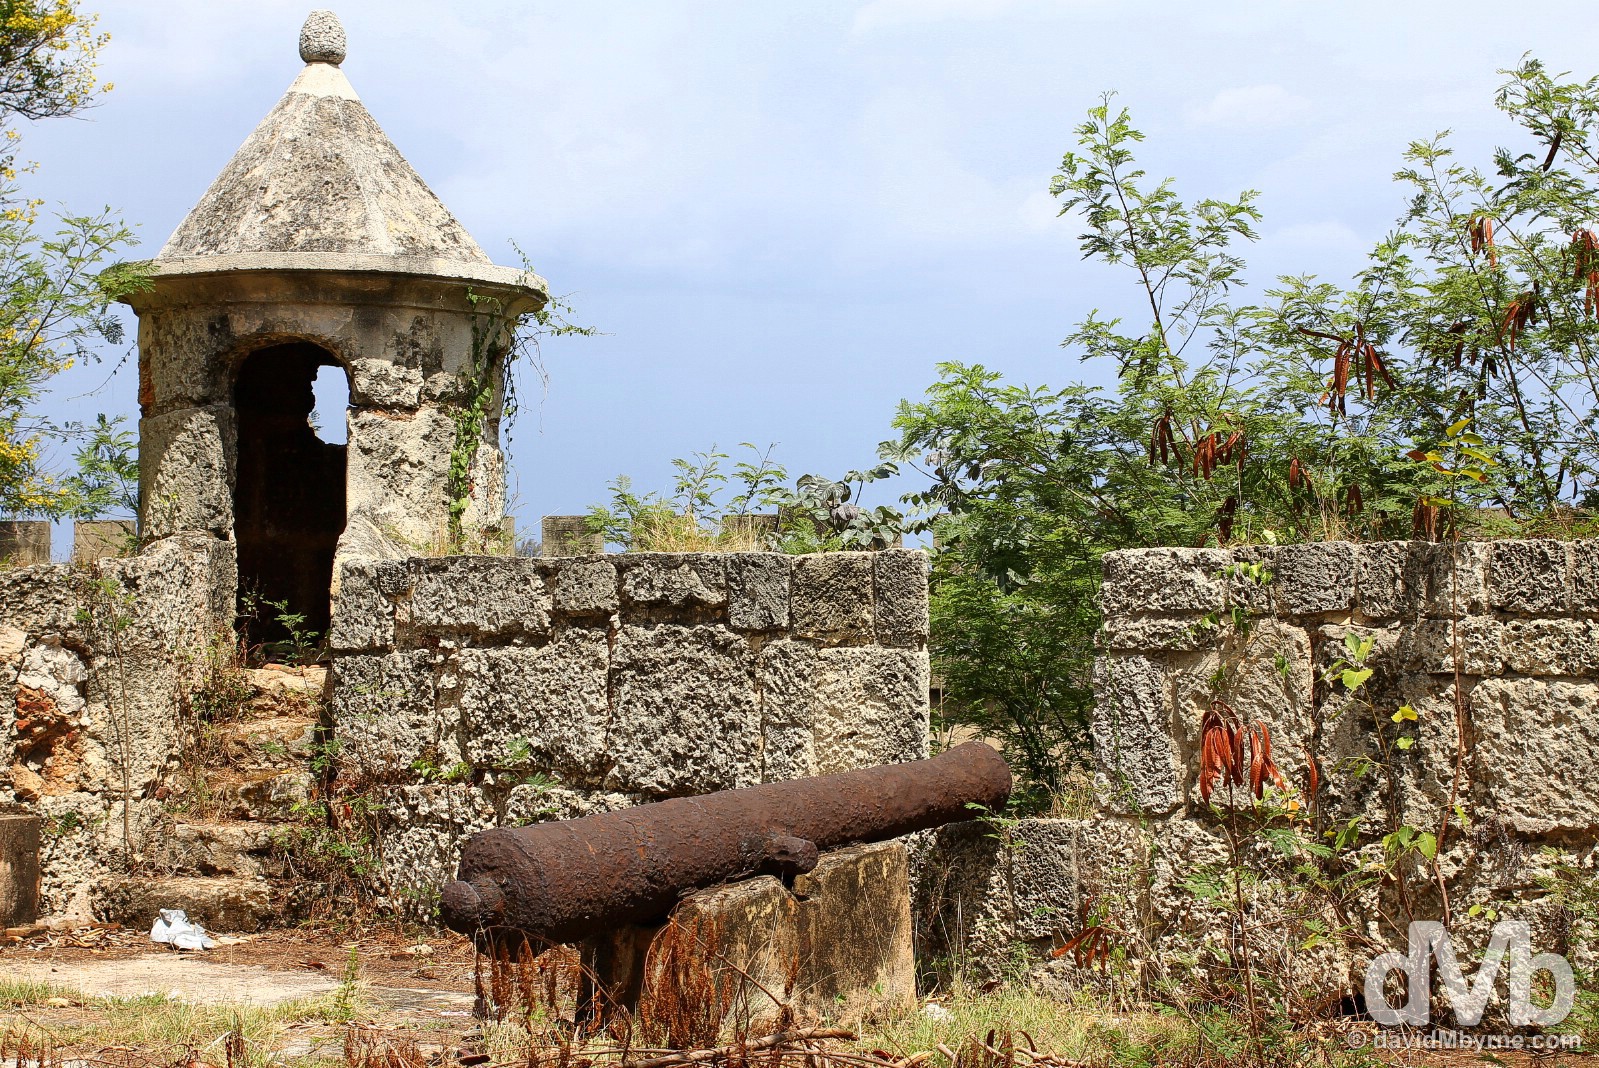 Fortaleza Ozama (Ozama Fortress) in Santo Domingo, Dominican Republic. May 26, 2015.